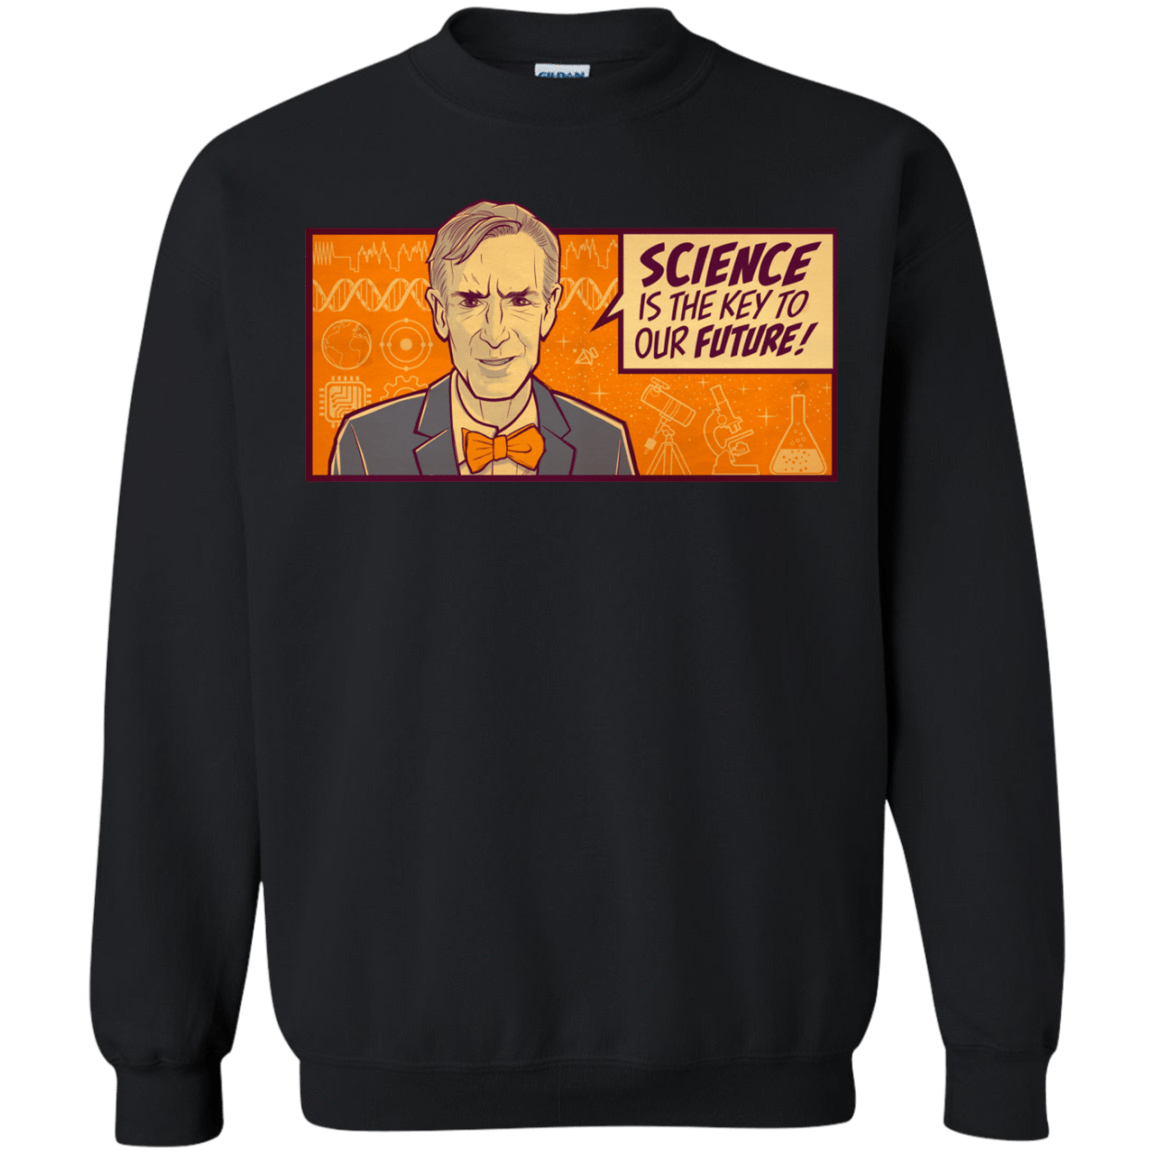 Sweatshirts Black / S NYE key future Crewneck Sweatshirt